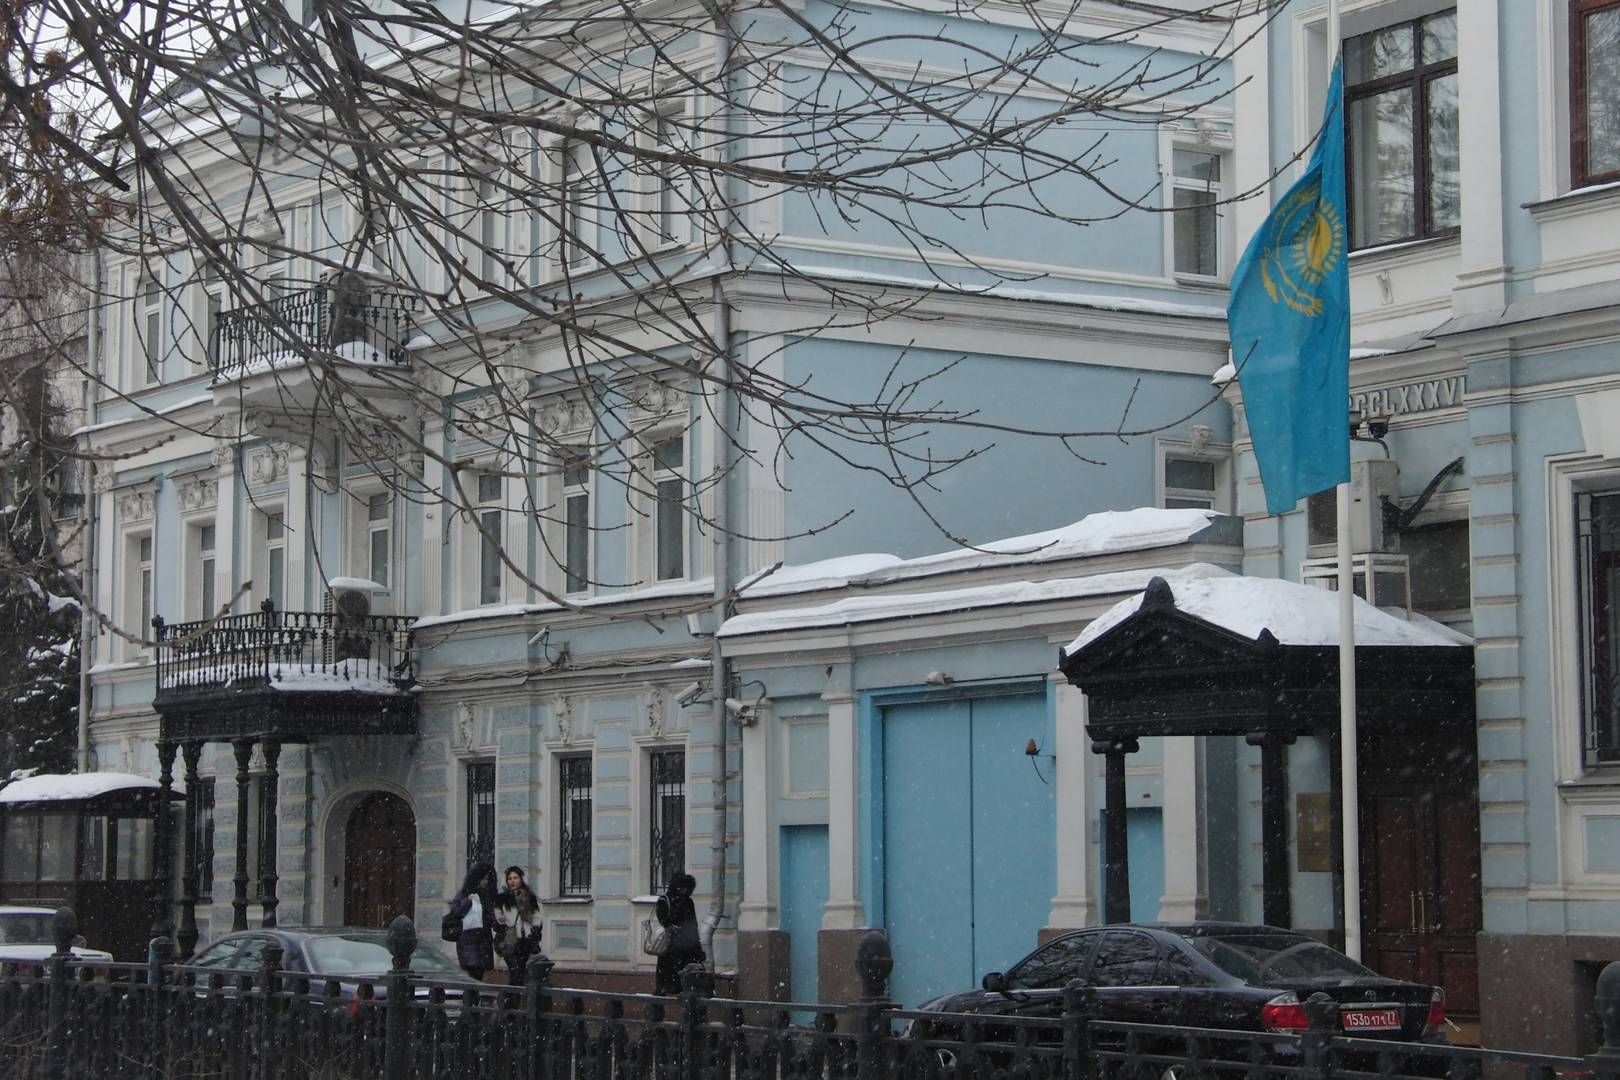 Посольство казахстана в минске